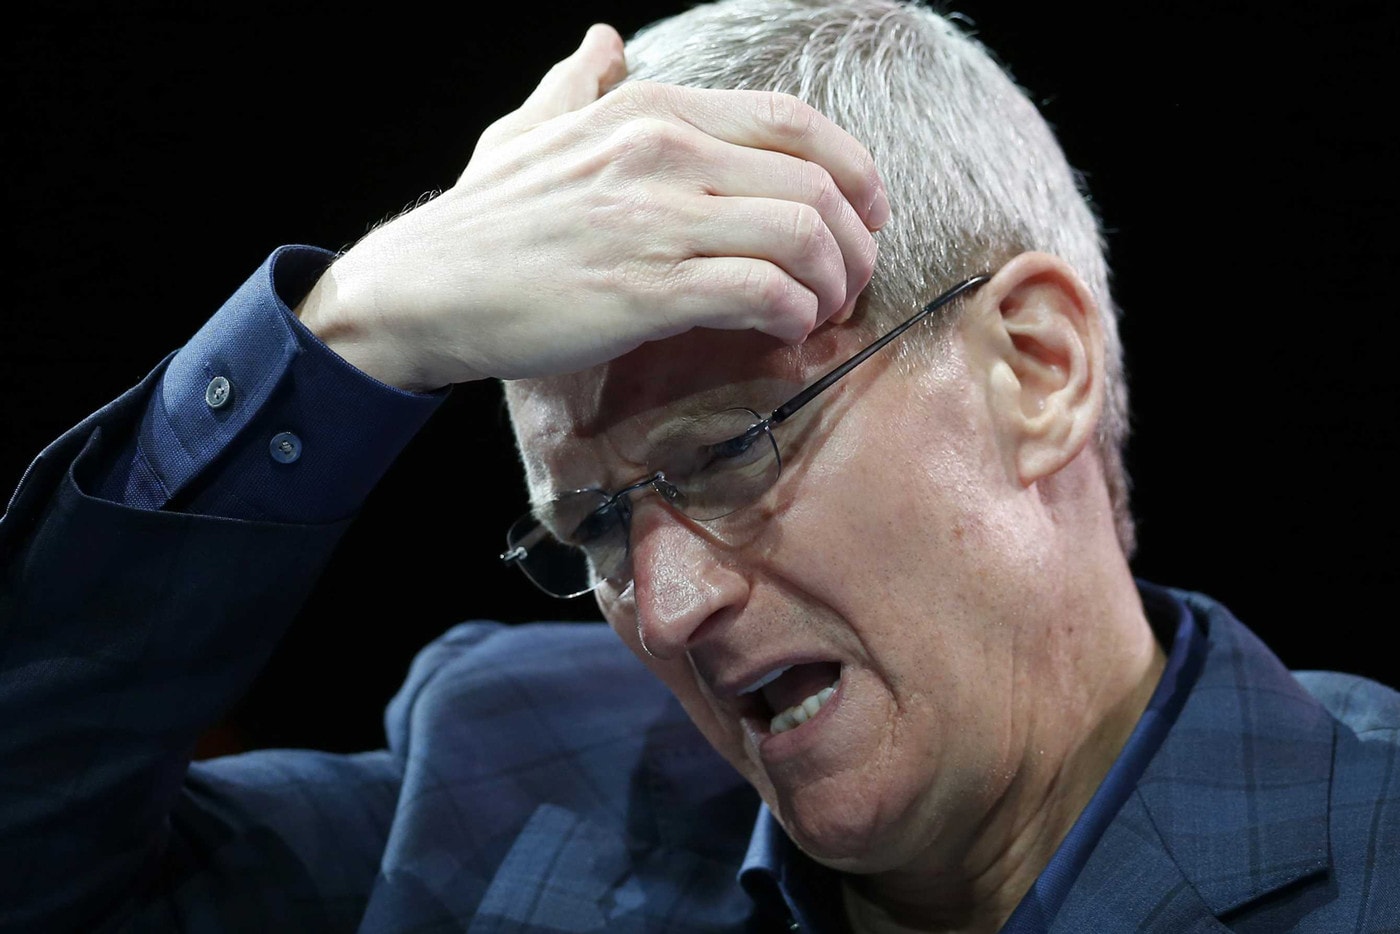 Apple 將不再公佈 iPhone、iPad、Mac 每季度銷售數字